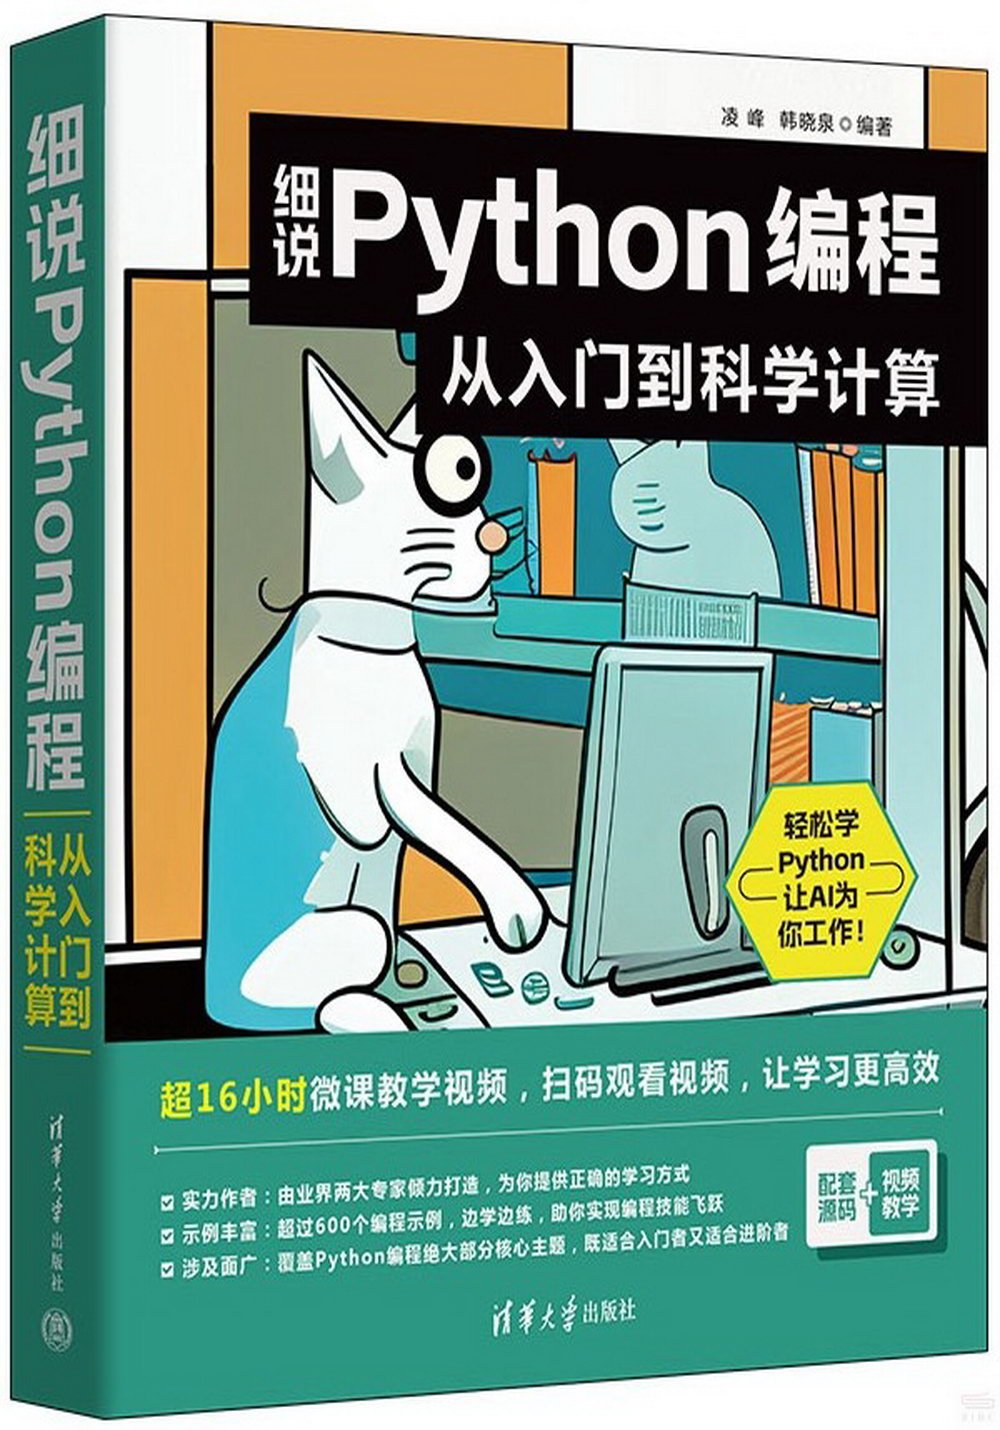 細說Python編程：從入門到科學計算